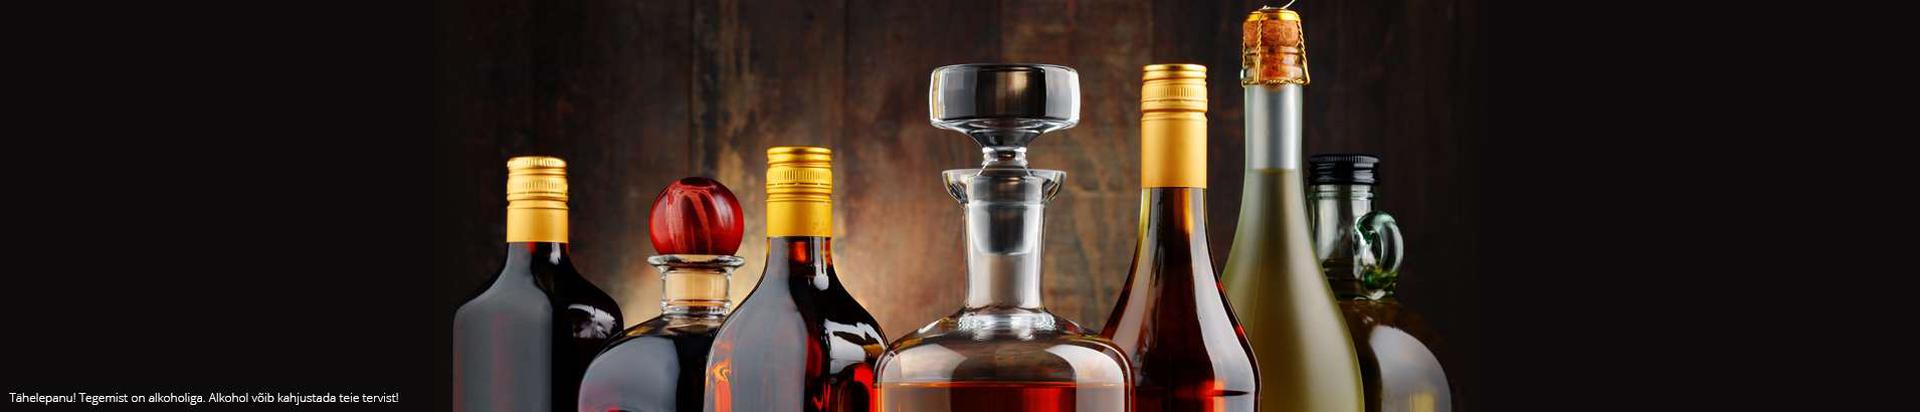 Laiast tootevalikust leiab erinevaid veine, vahuveine, šampanjasid, konjakeid, viskisid jpm. Toome Eestisse brände nagu HINE, Joseph Perrier, Feudi, Pizzolato, Fireball Cinnamon Whisky, Pinha..